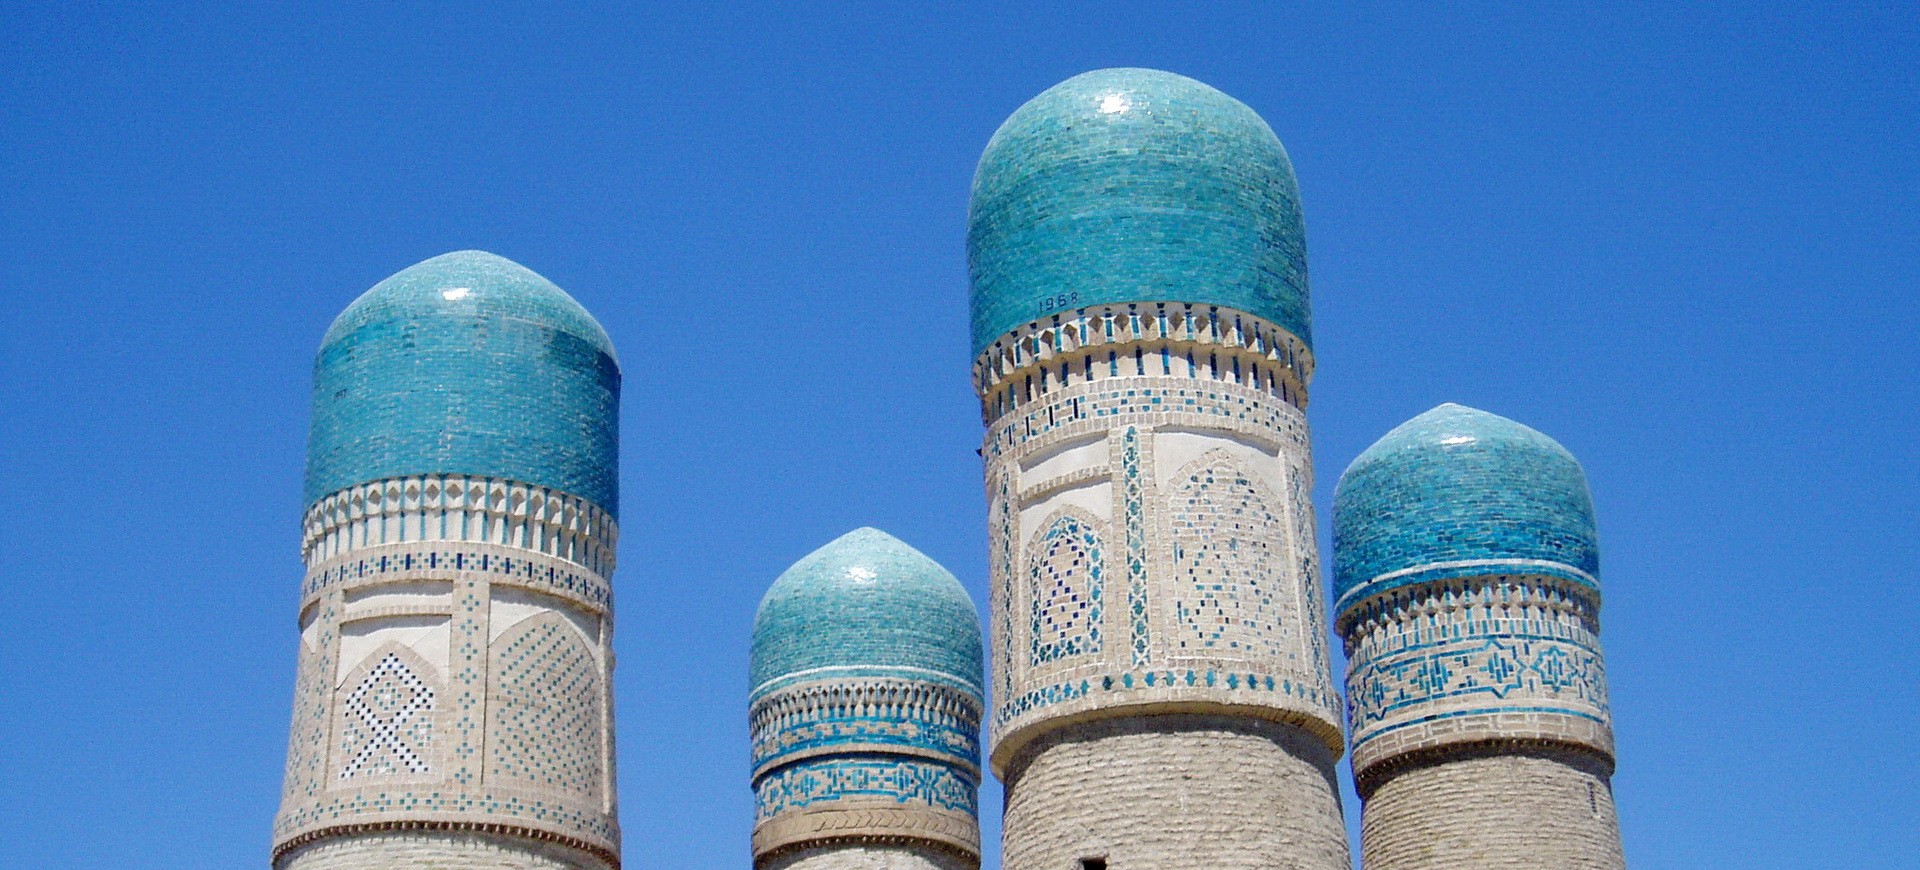 Ouzbékistan Bukhara Chor Minar